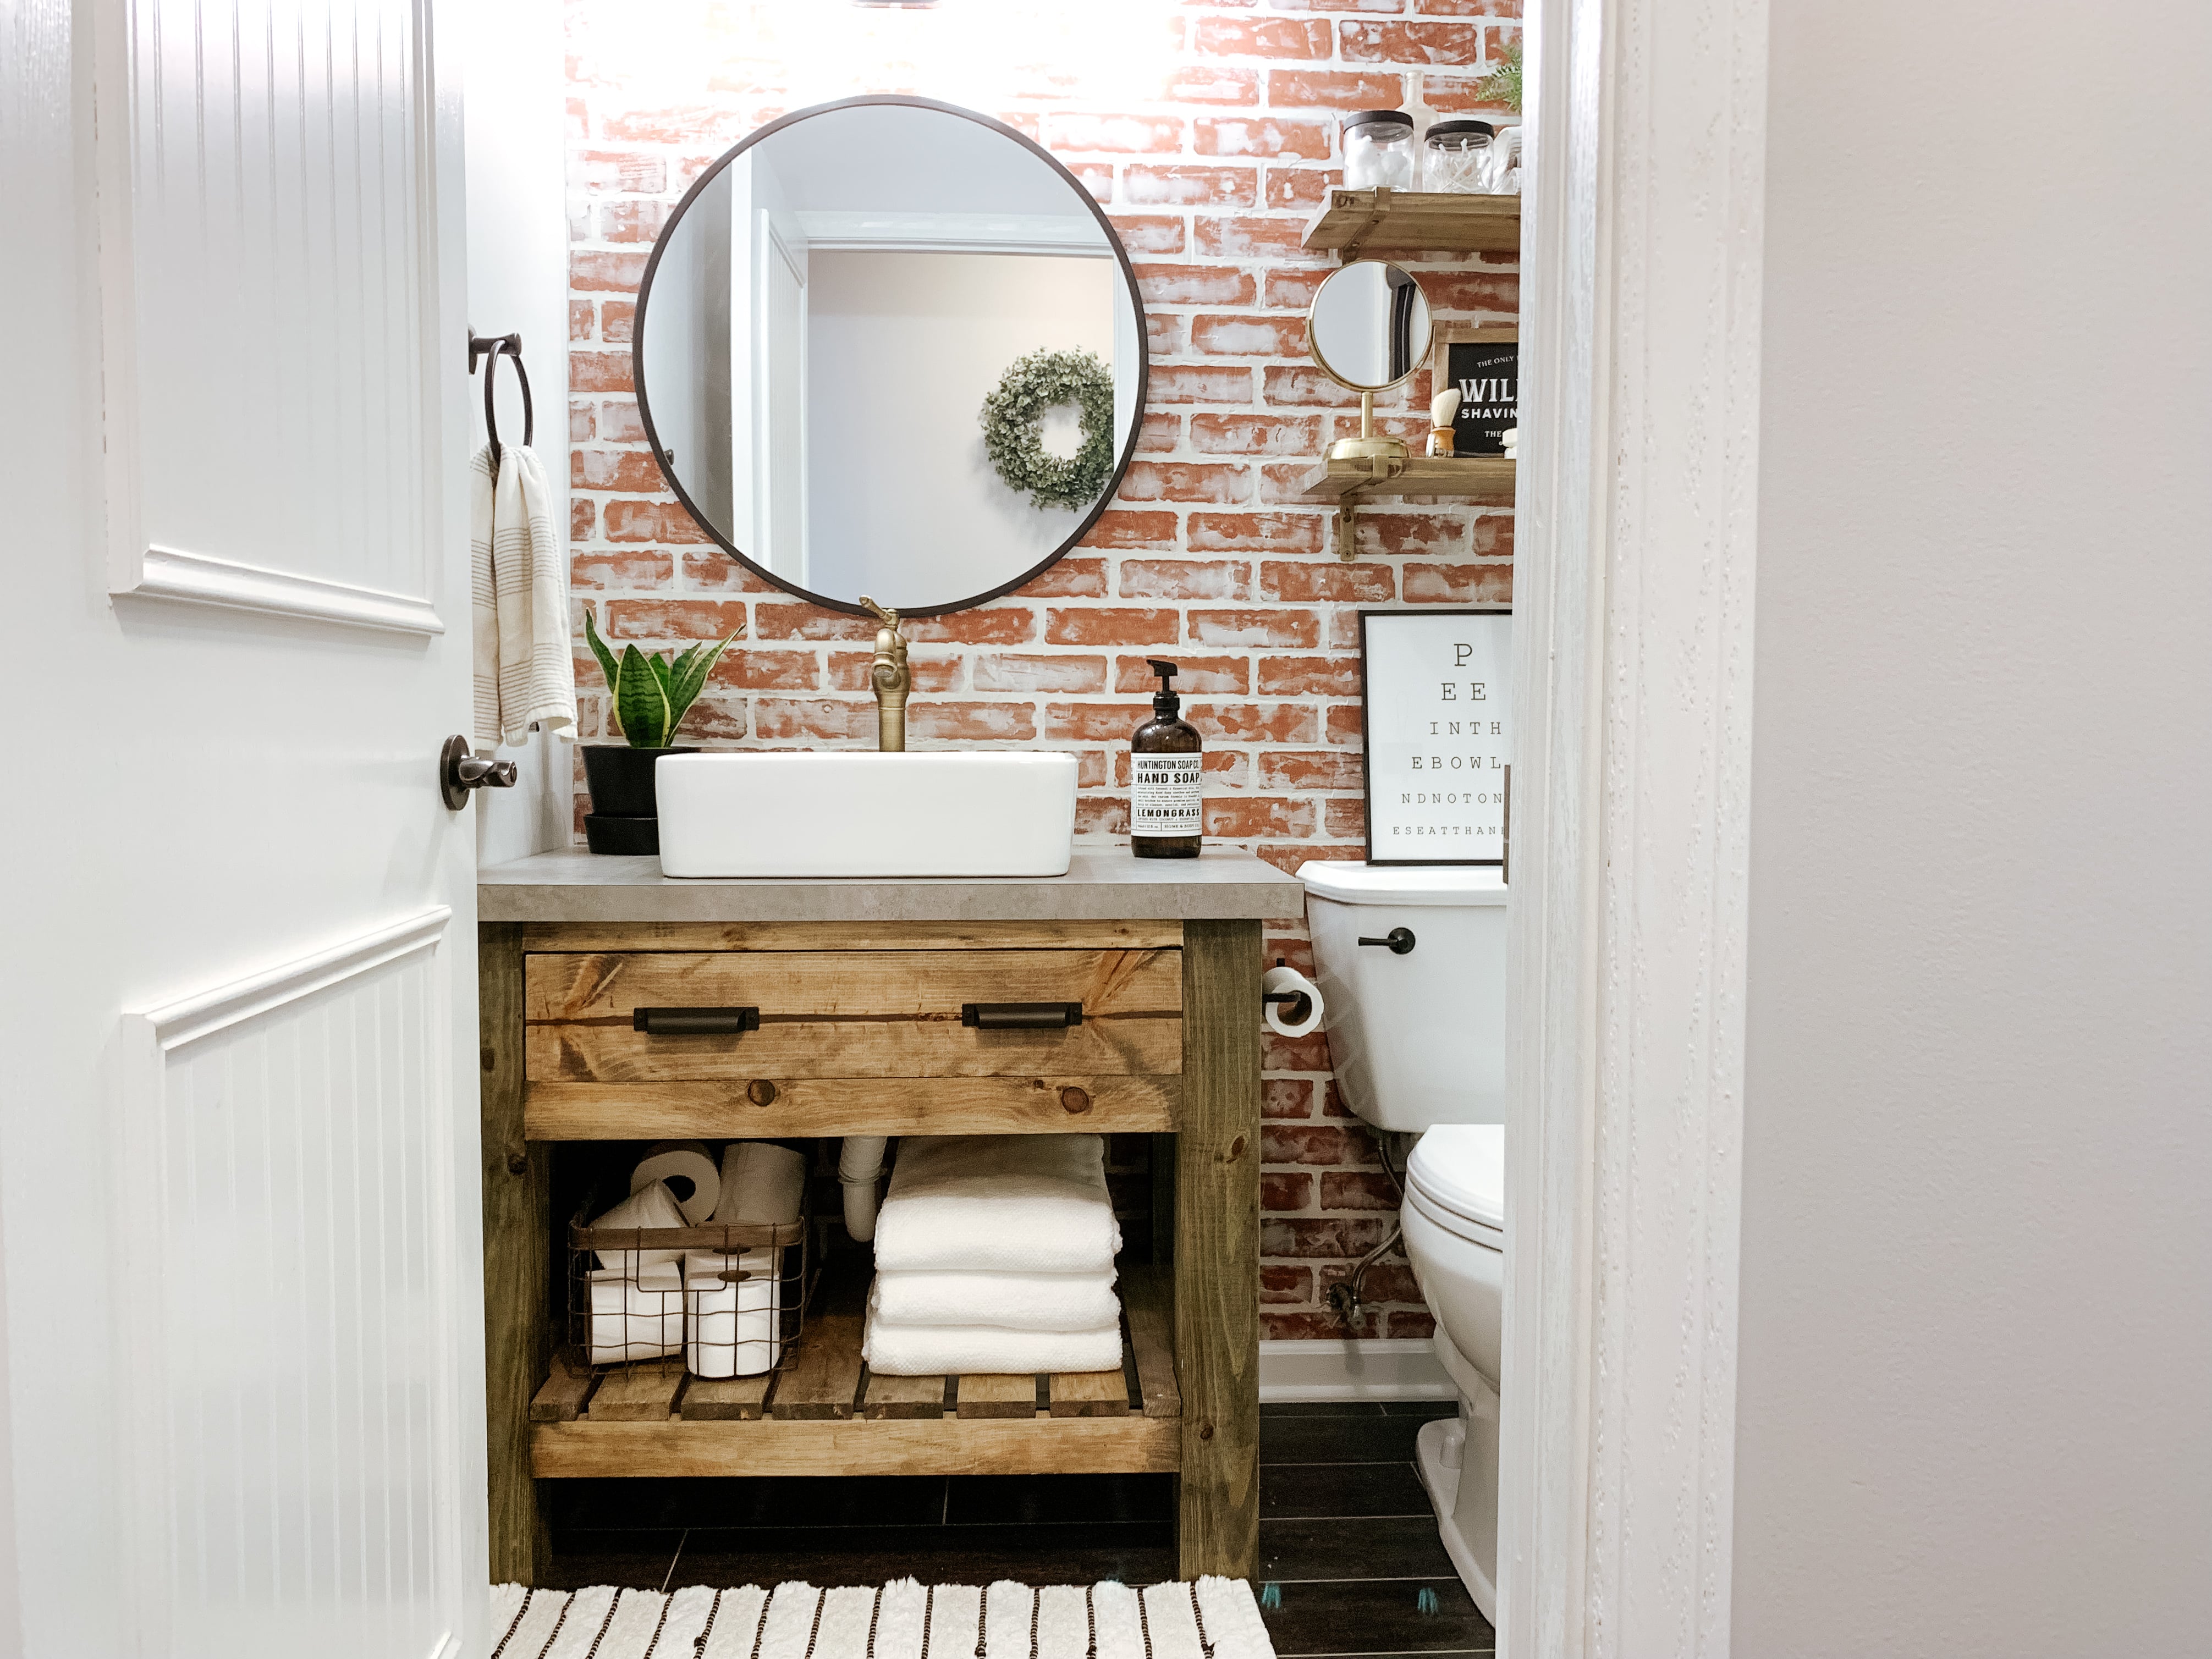 Diy Rustic Bathroom Vanity Sammy On State, Diy Double Sink Vanity Plans